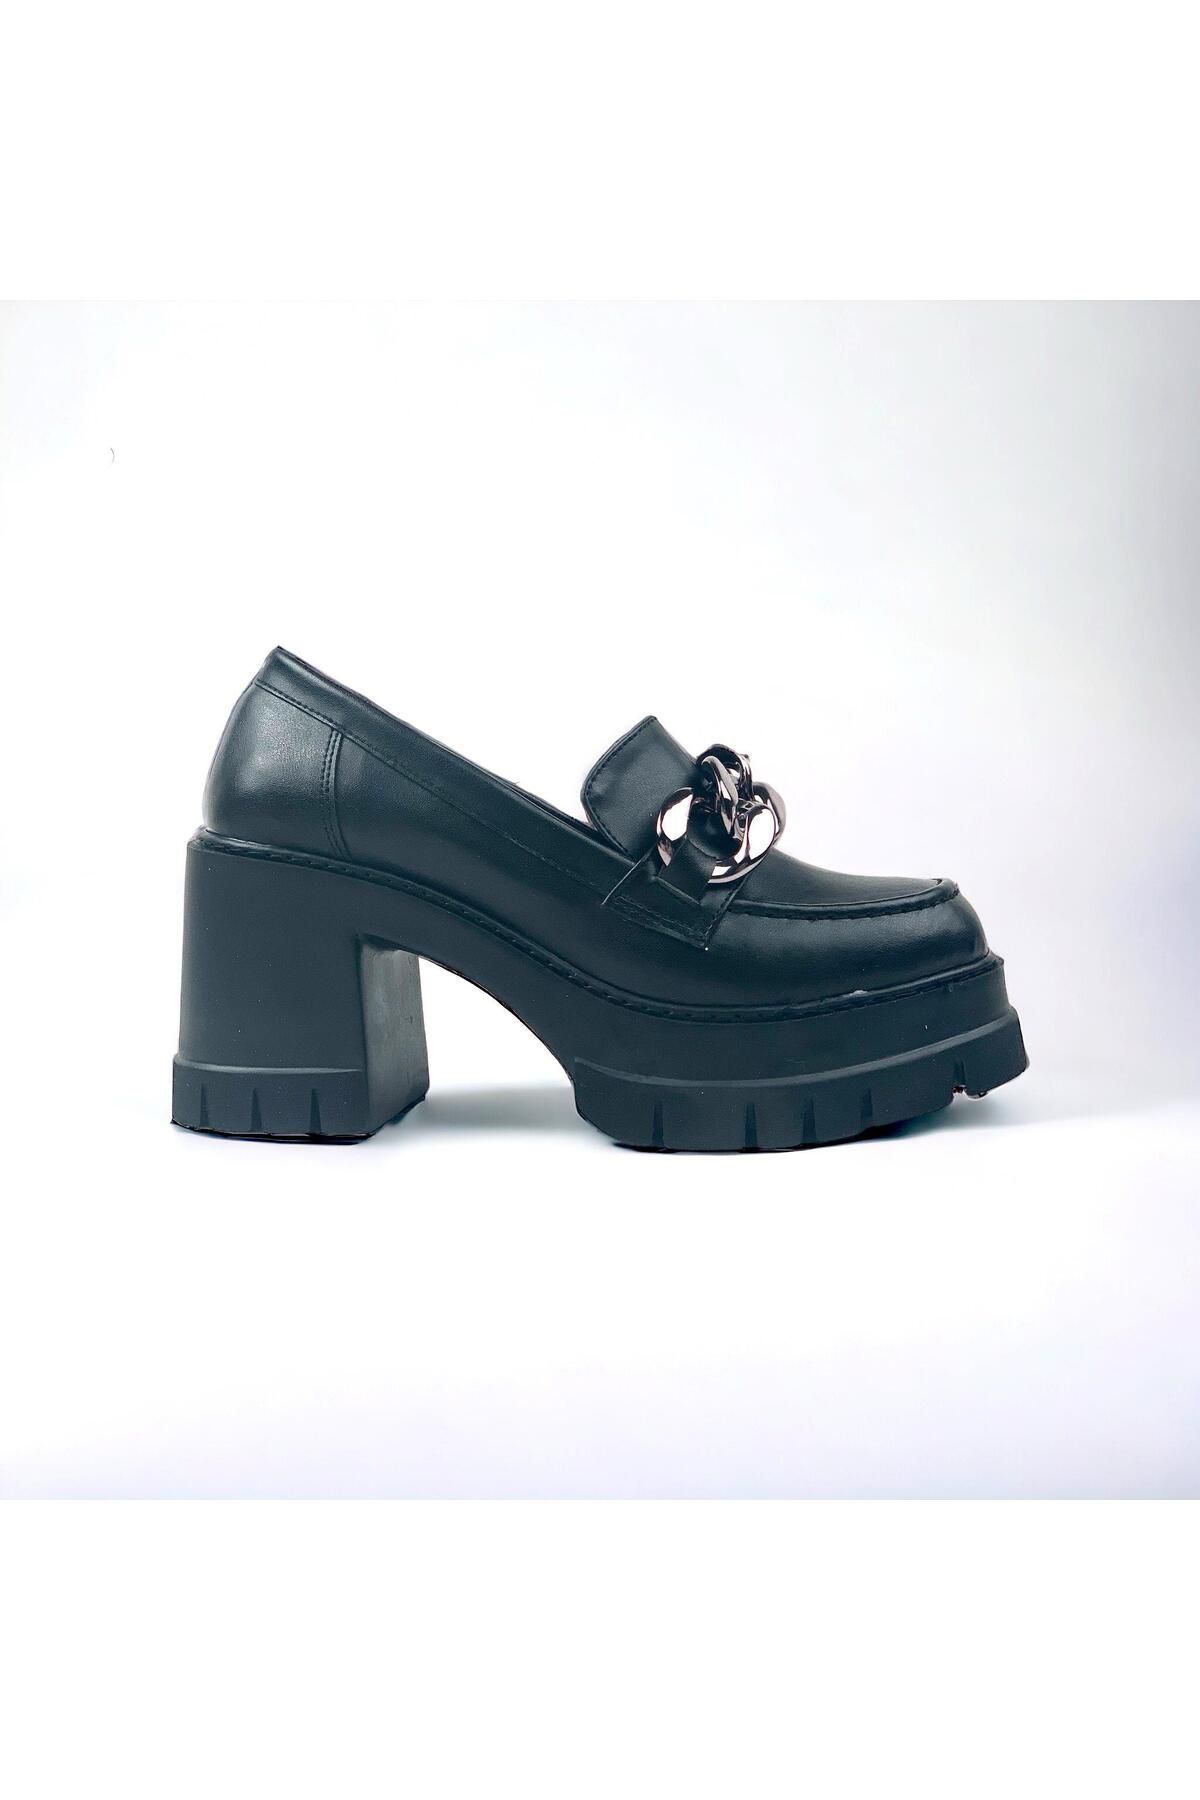 bescobel Kadın Konsa Siyah Yüksek Topuklu Leofer Ayakkabı